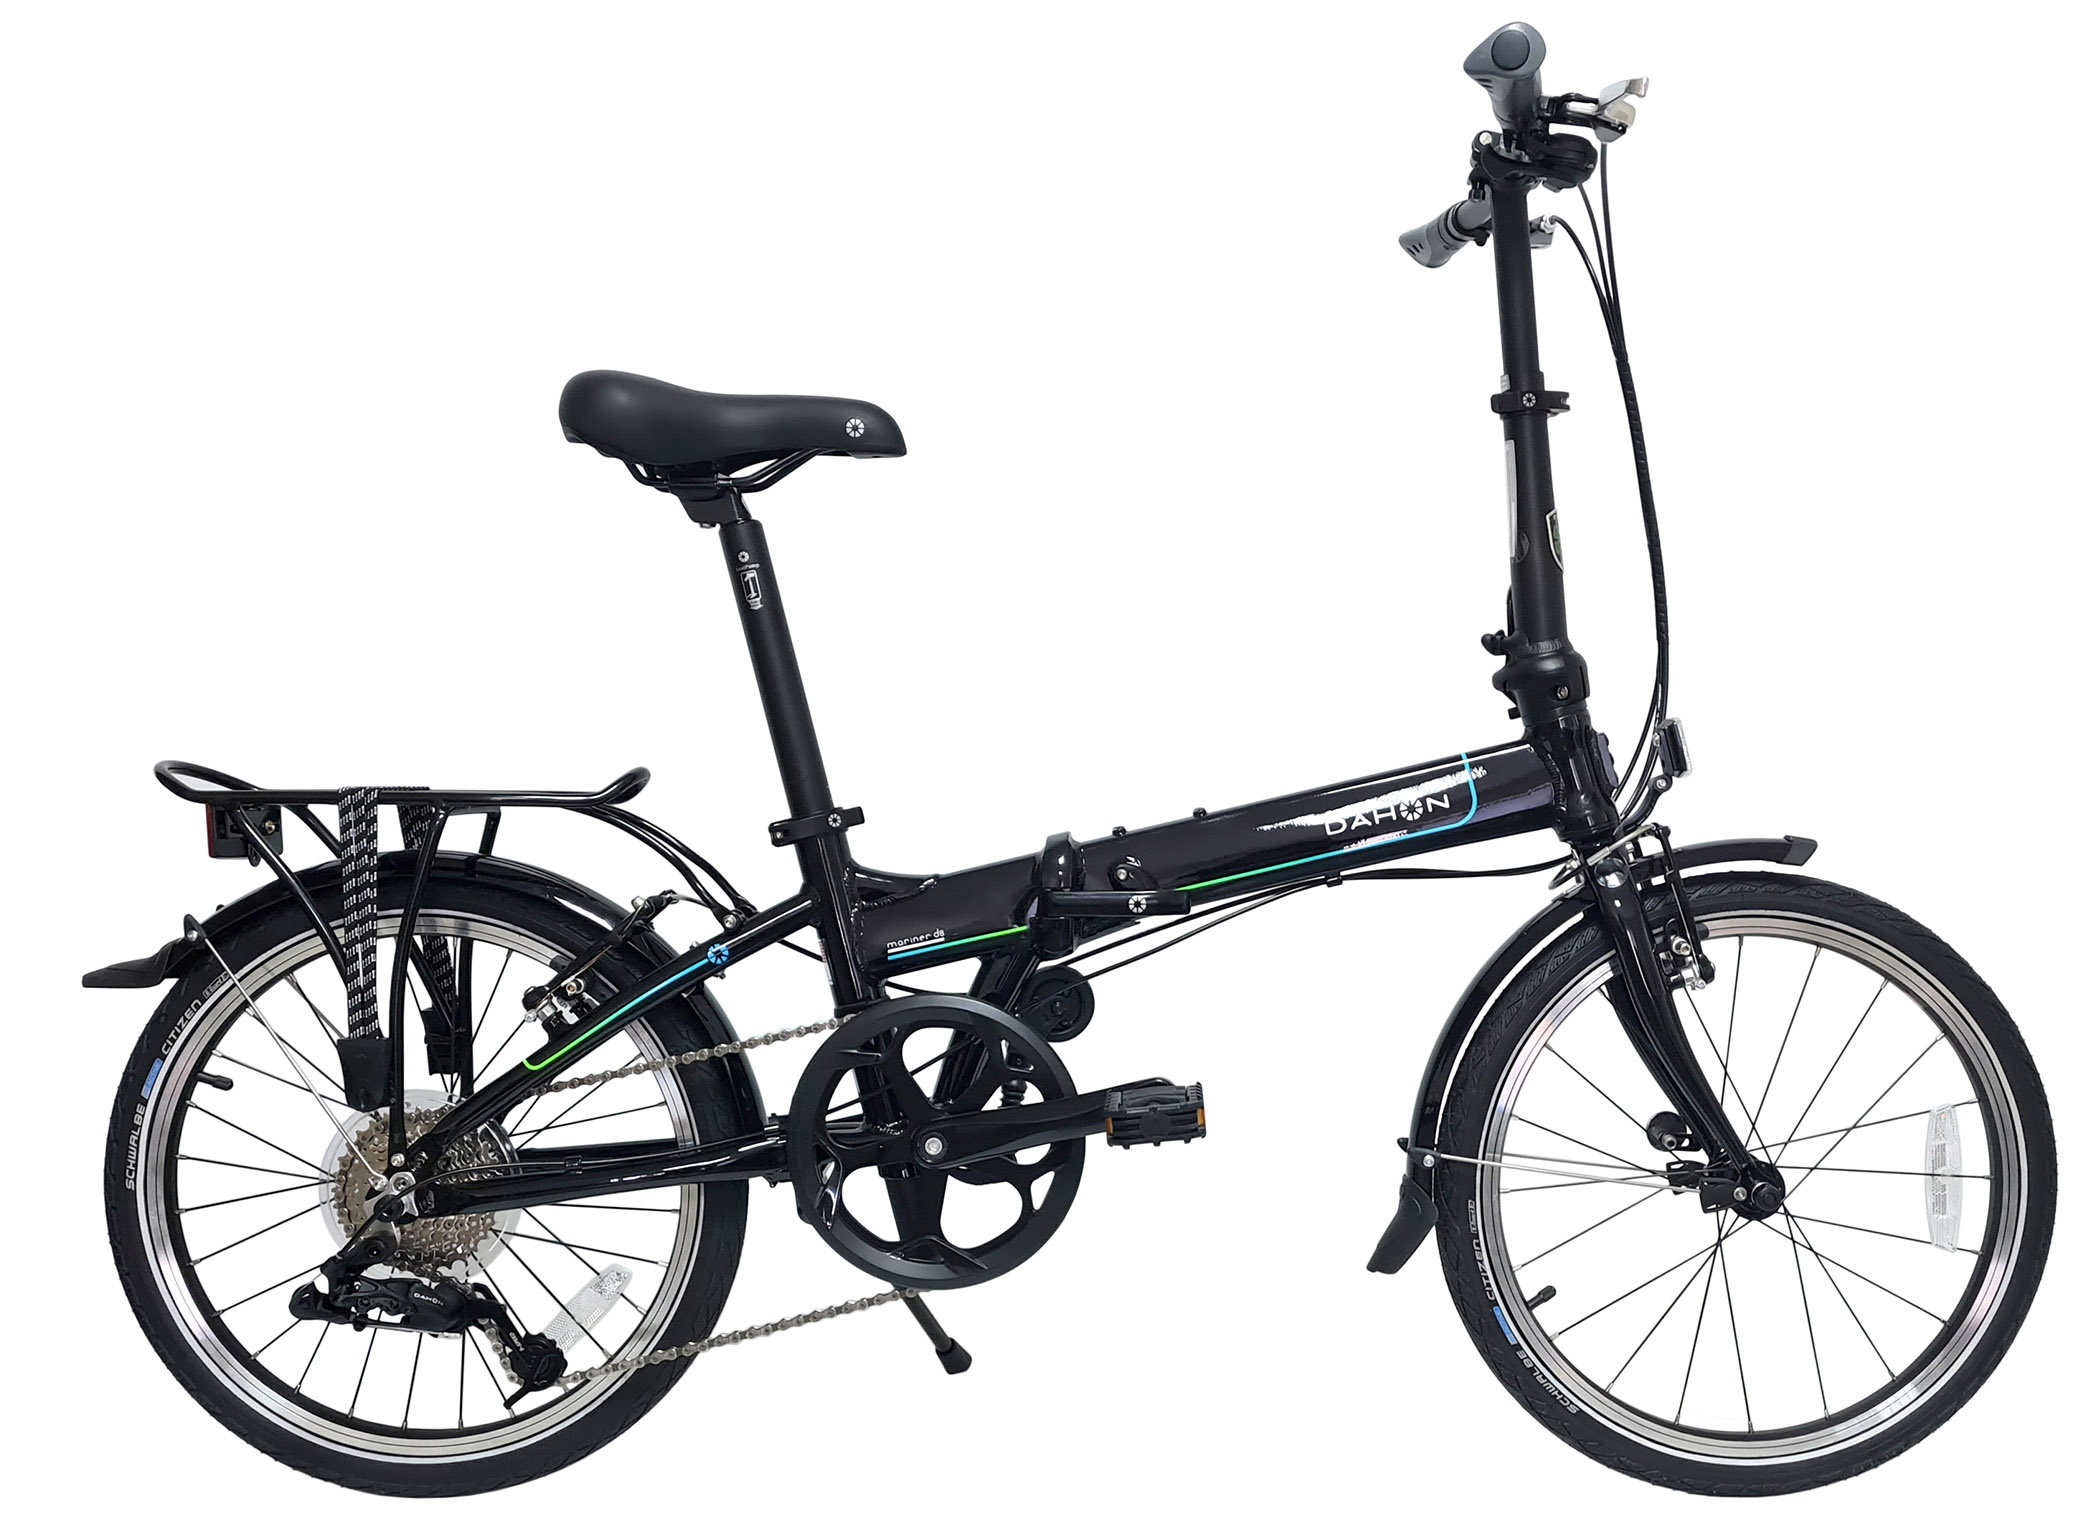  Отзывы о Складном велосипеде Dahon Mariner D8 (2021) 2021